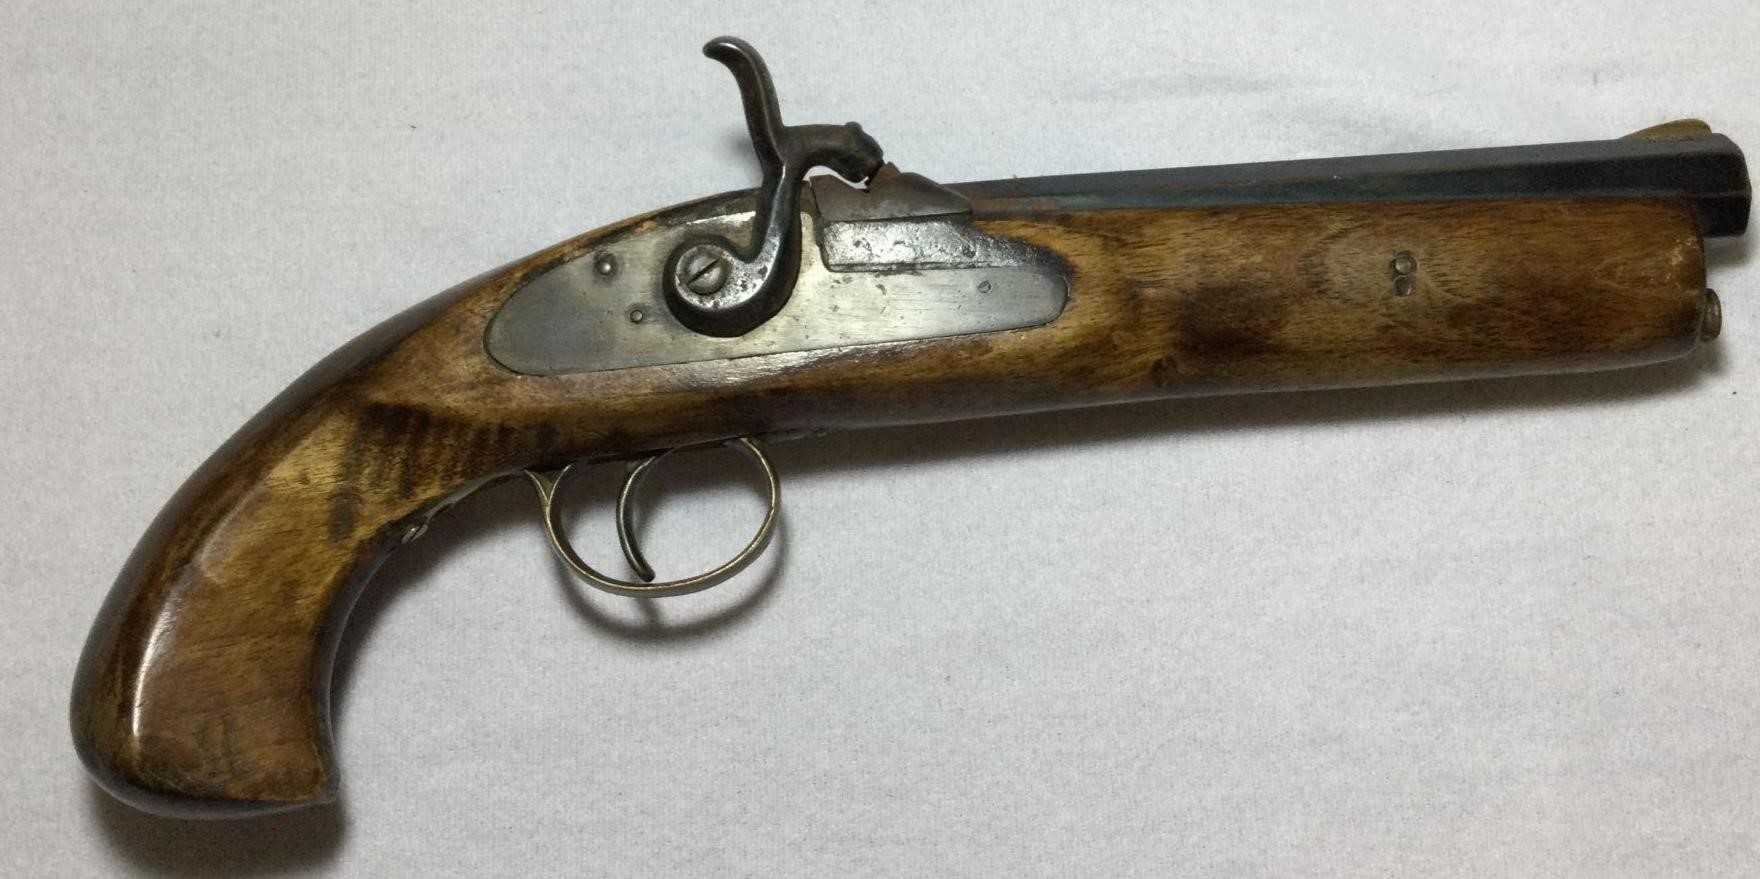 Antique Pennsylvania / Kentucky Pistol